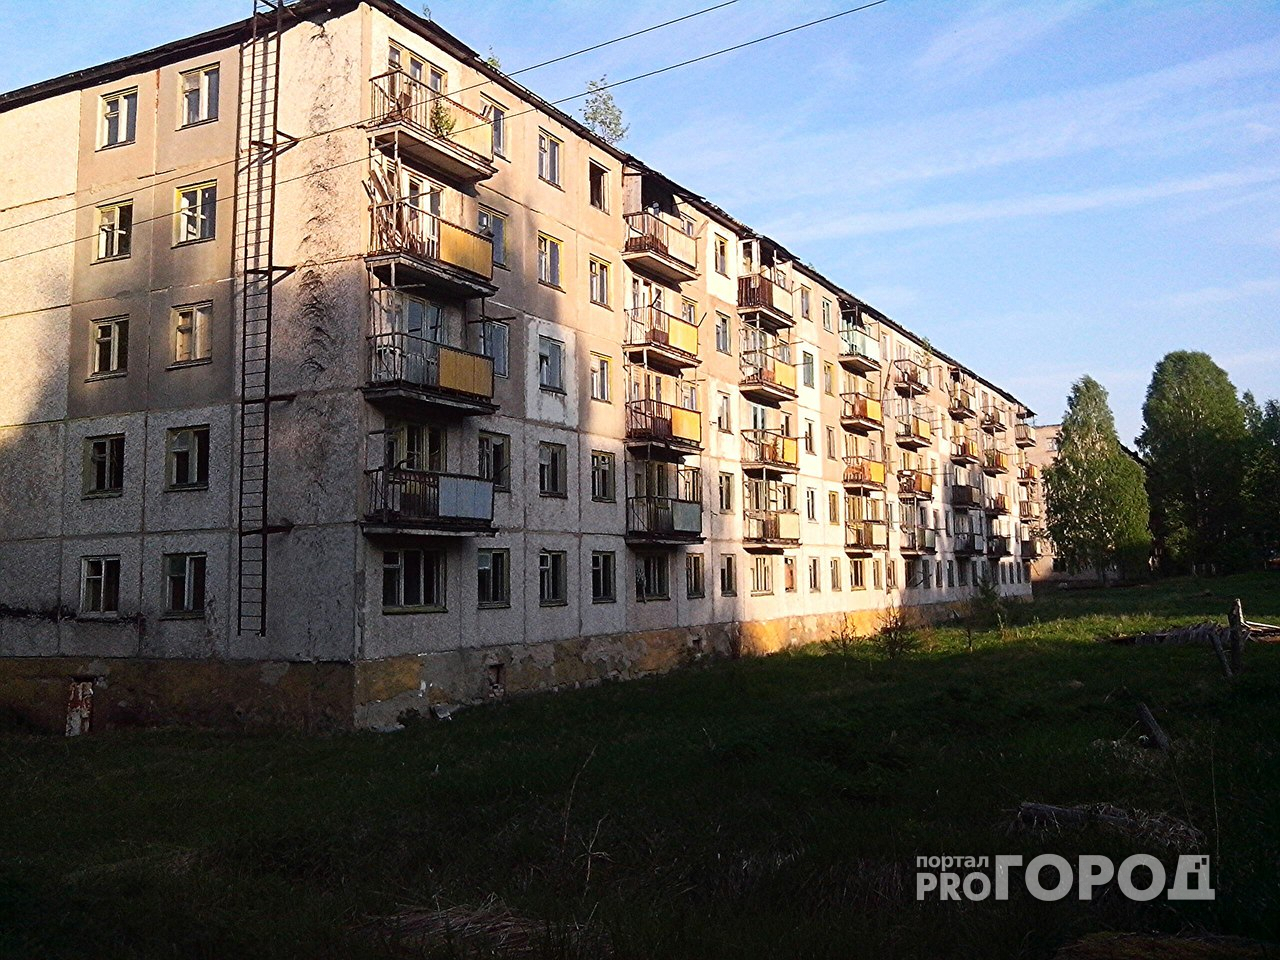 Что обсуждают в Чепецке: заброшенный город и пожар в квартире